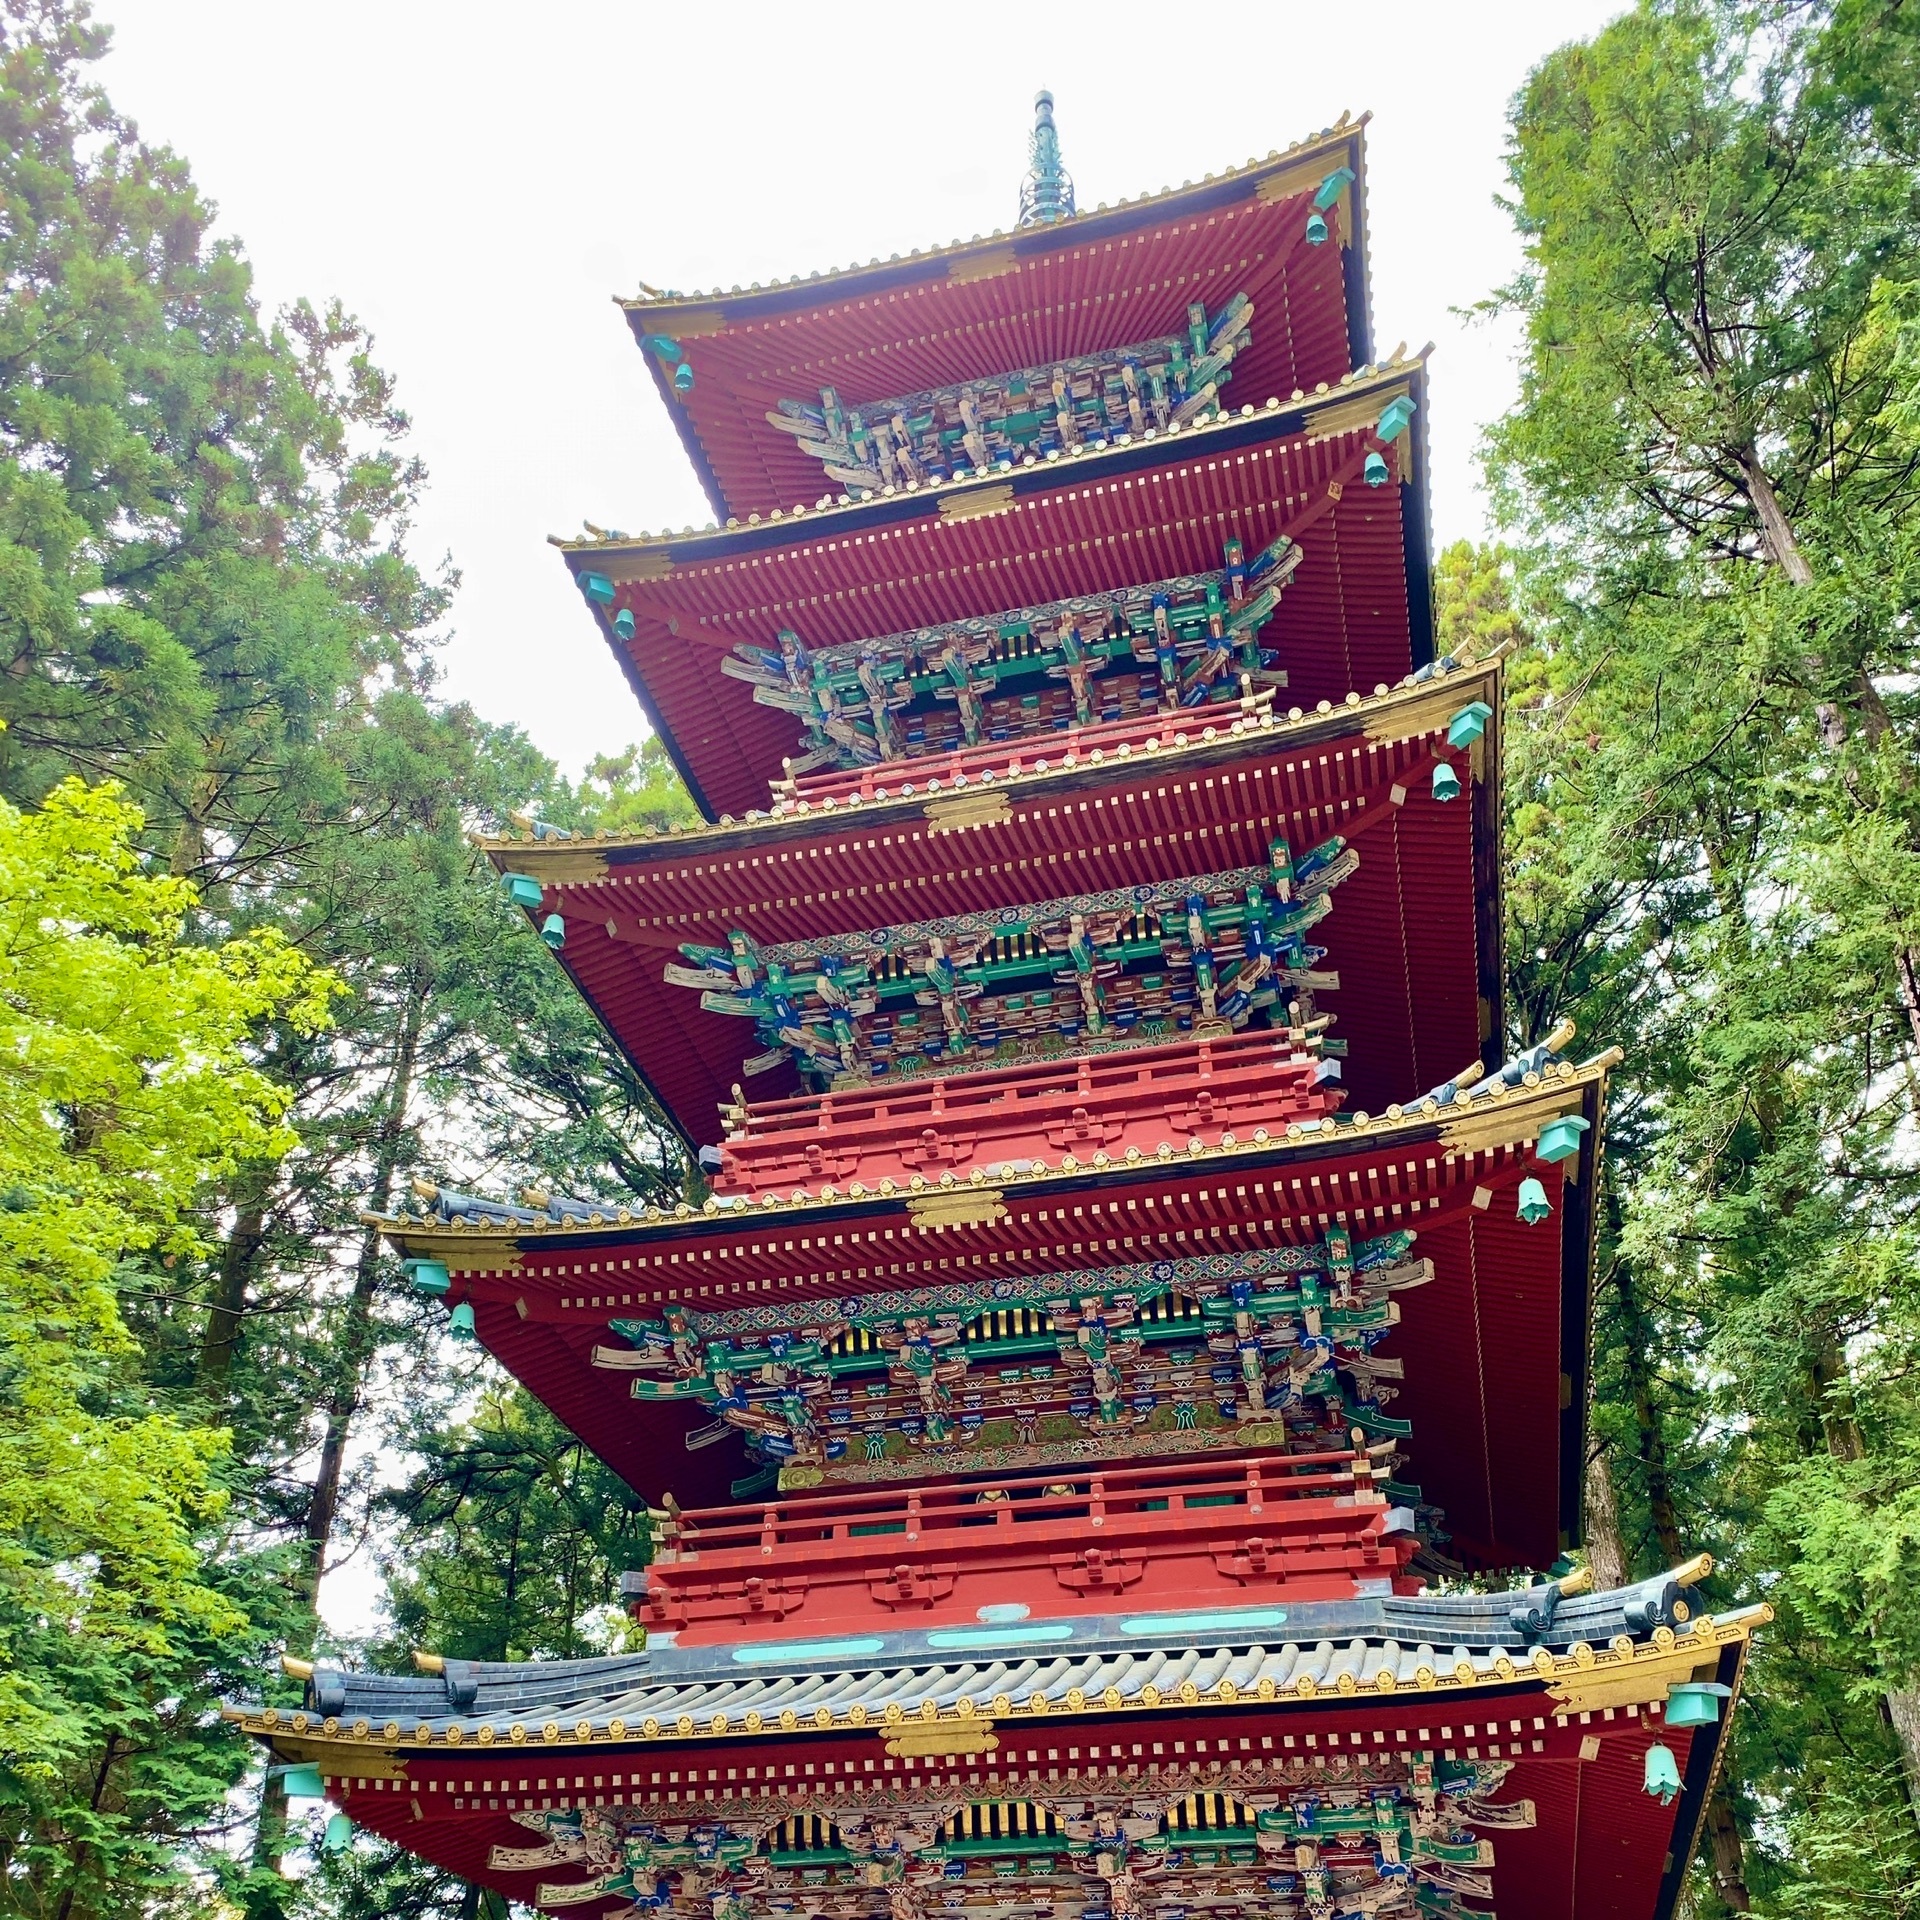 日光東照宮 五重塔 高さが東京スカイツリーと同じ 日光東照宮の五重塔